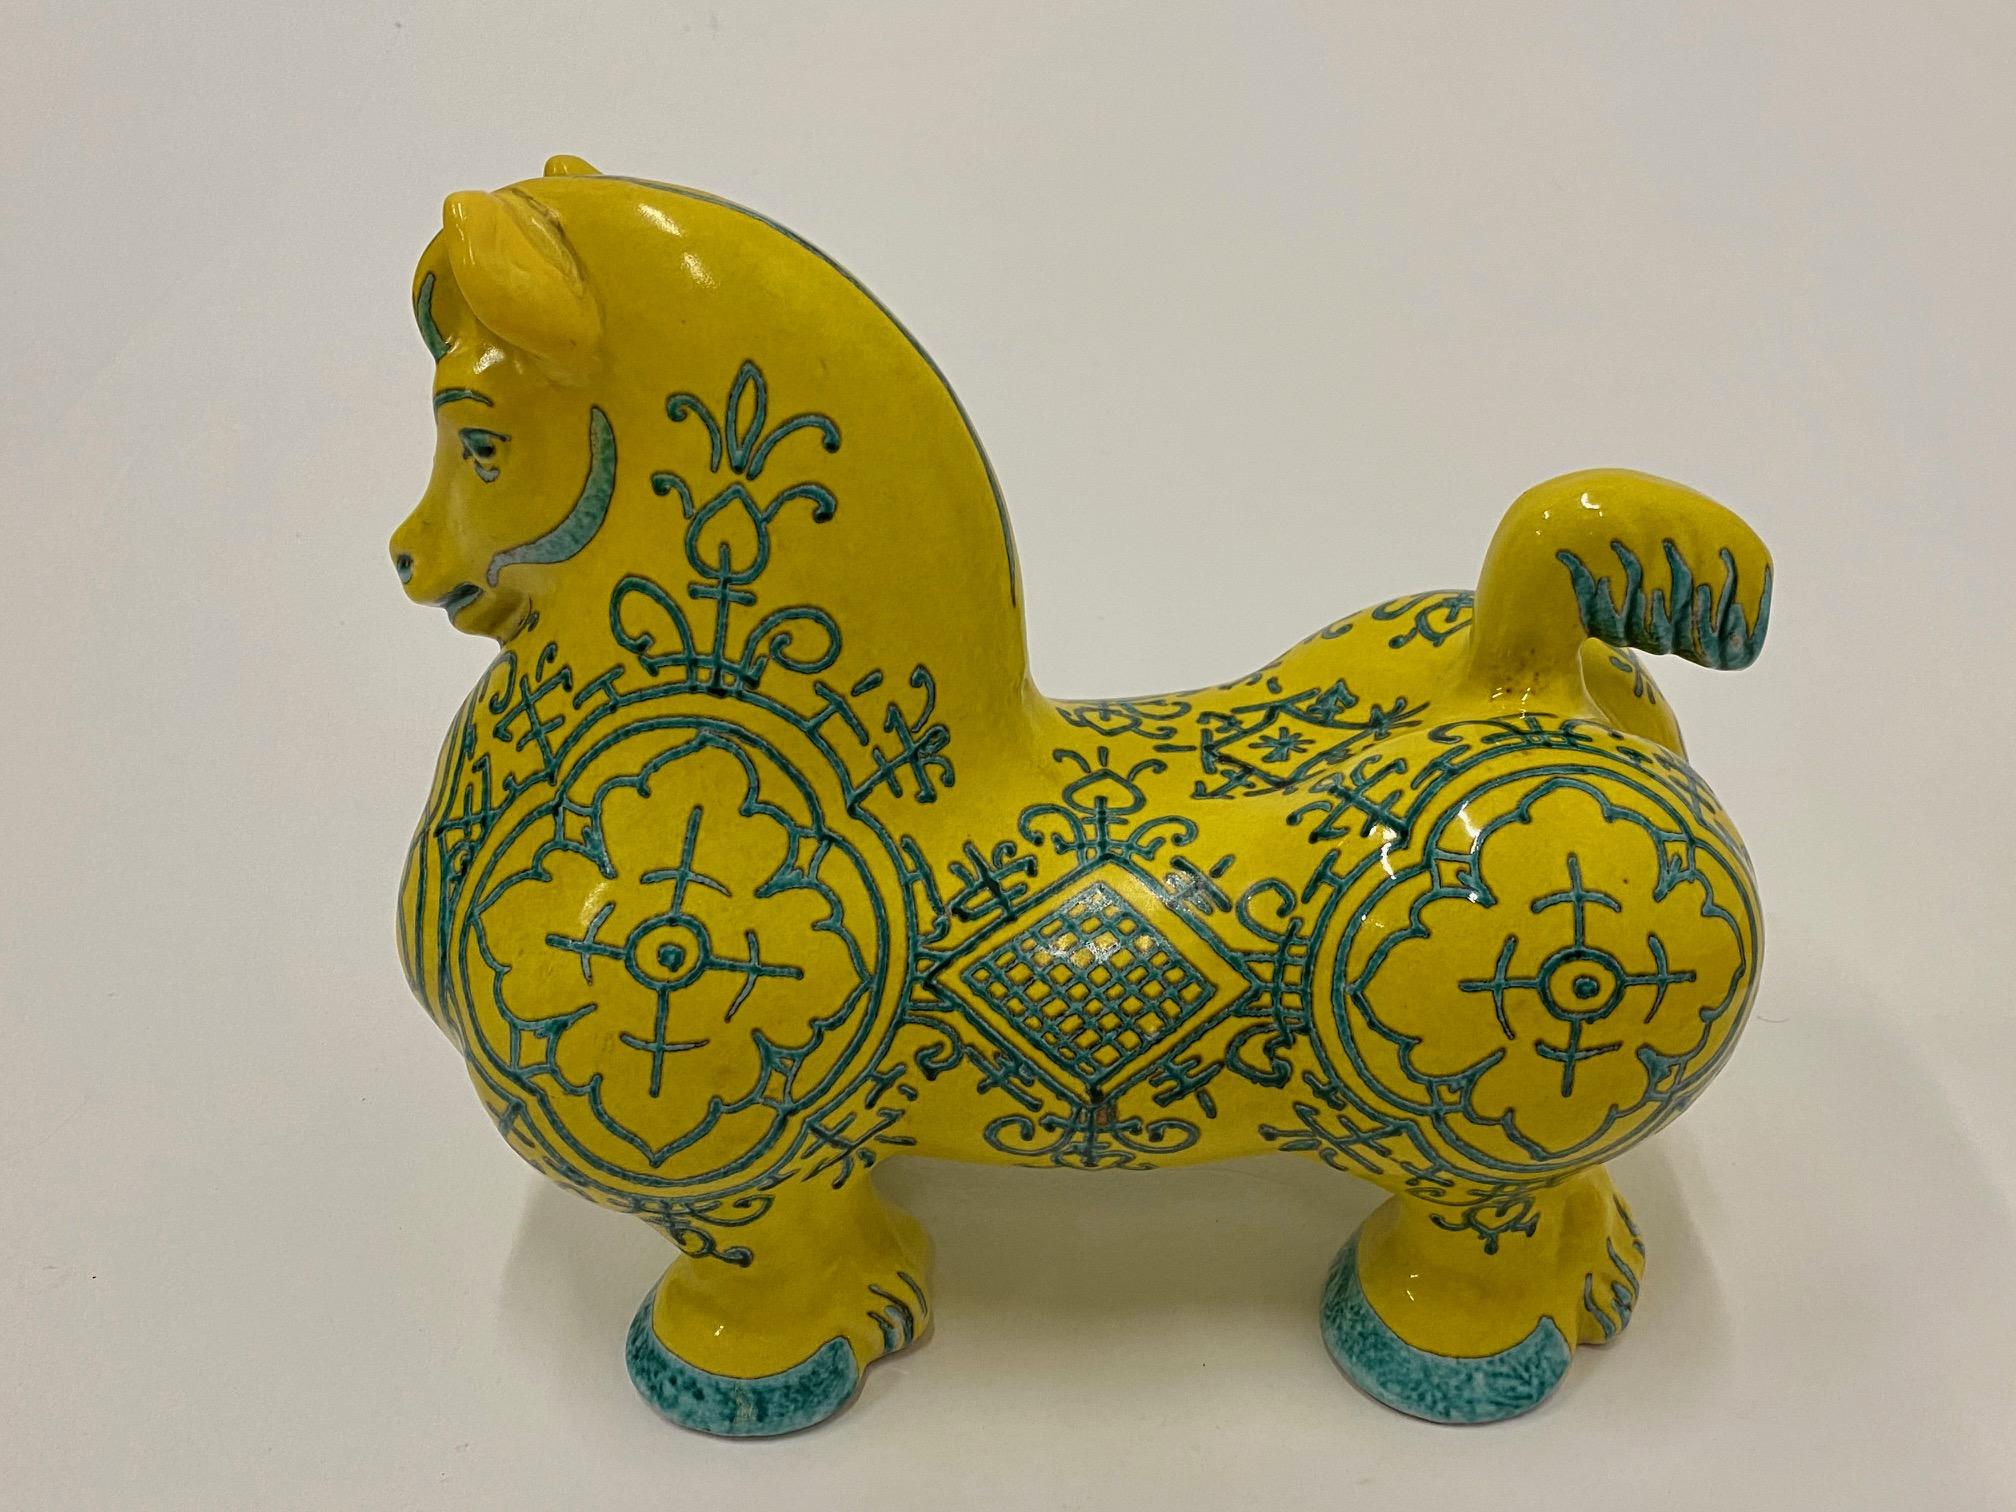 Hübsche leuchtend gelbe italienische Keramik-Pferdeskulptur mit gemalter Dekoration in kontrastierendem Teal.